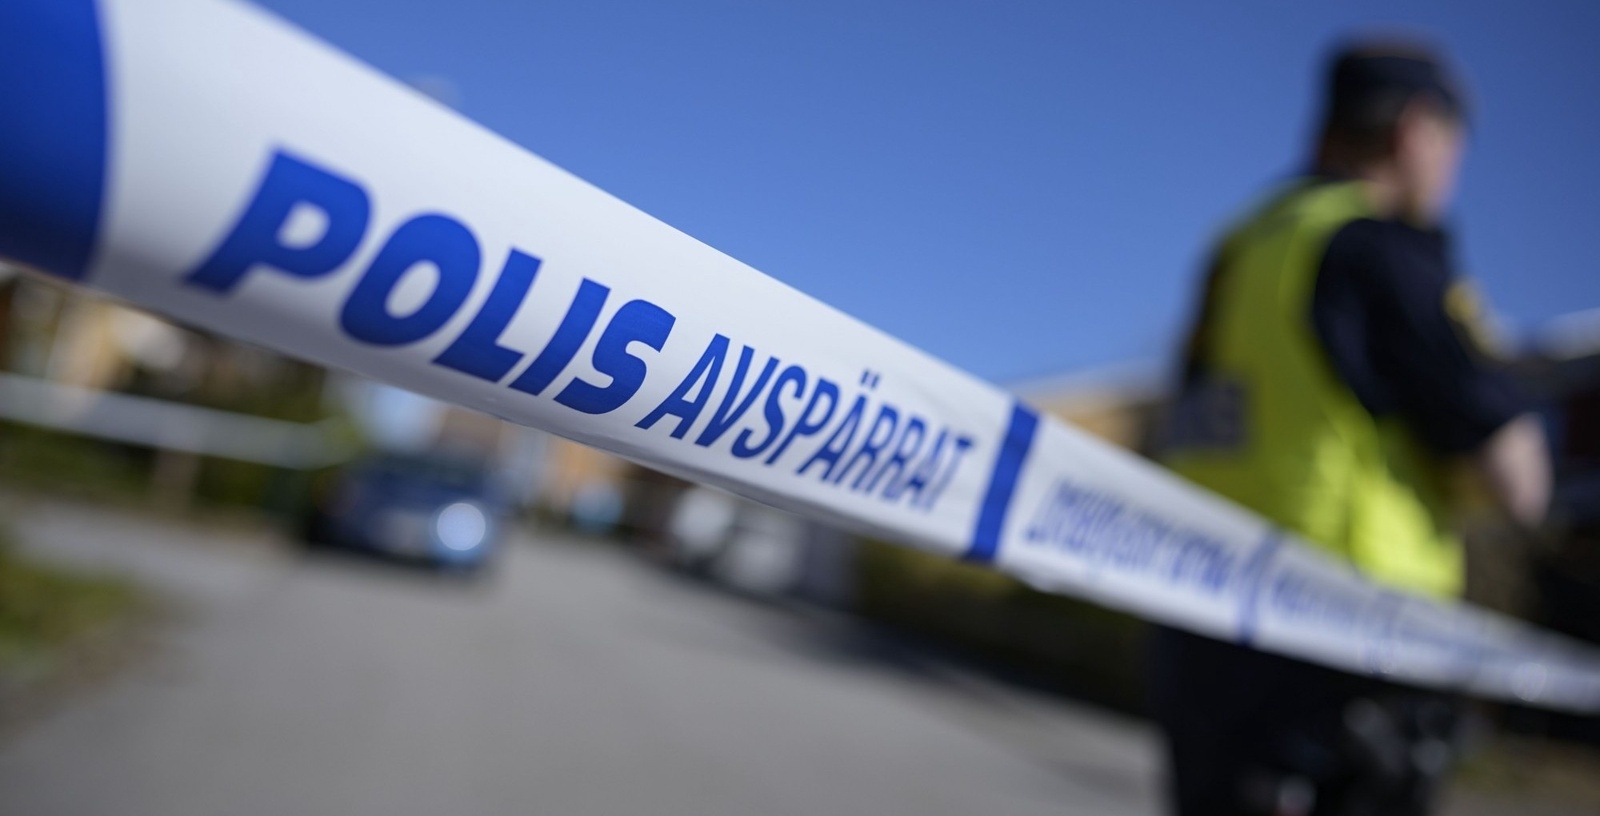 Polis och avspärrningar på Gunnesbo i Lund efter ett grovt brott på långfredagsmorgonen. 
Foto: Johan Nilsson / TT